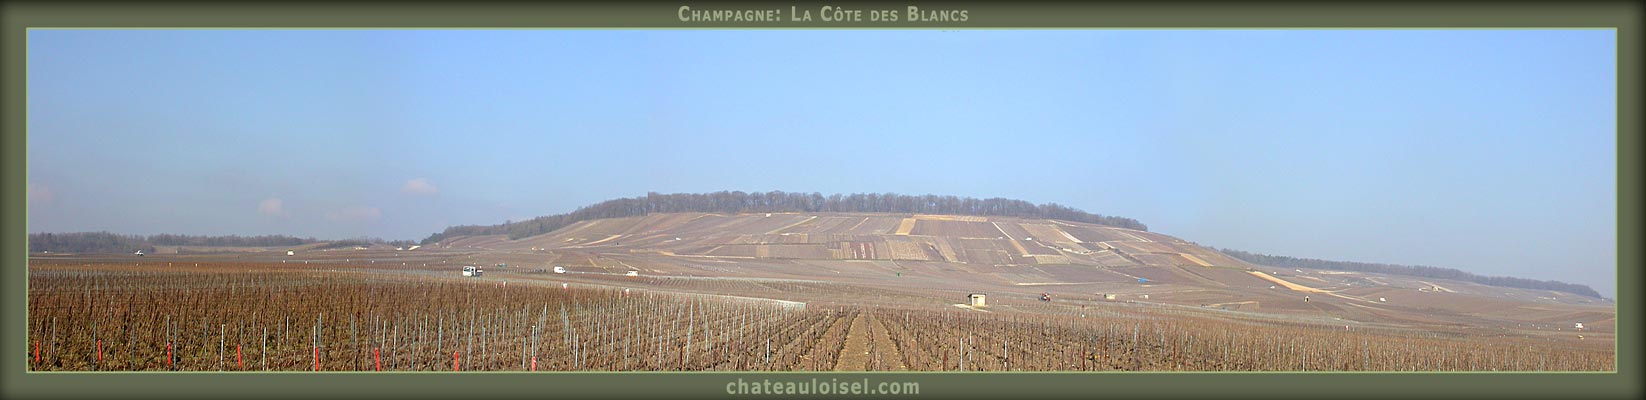 Champagne: La Côte des Blancs